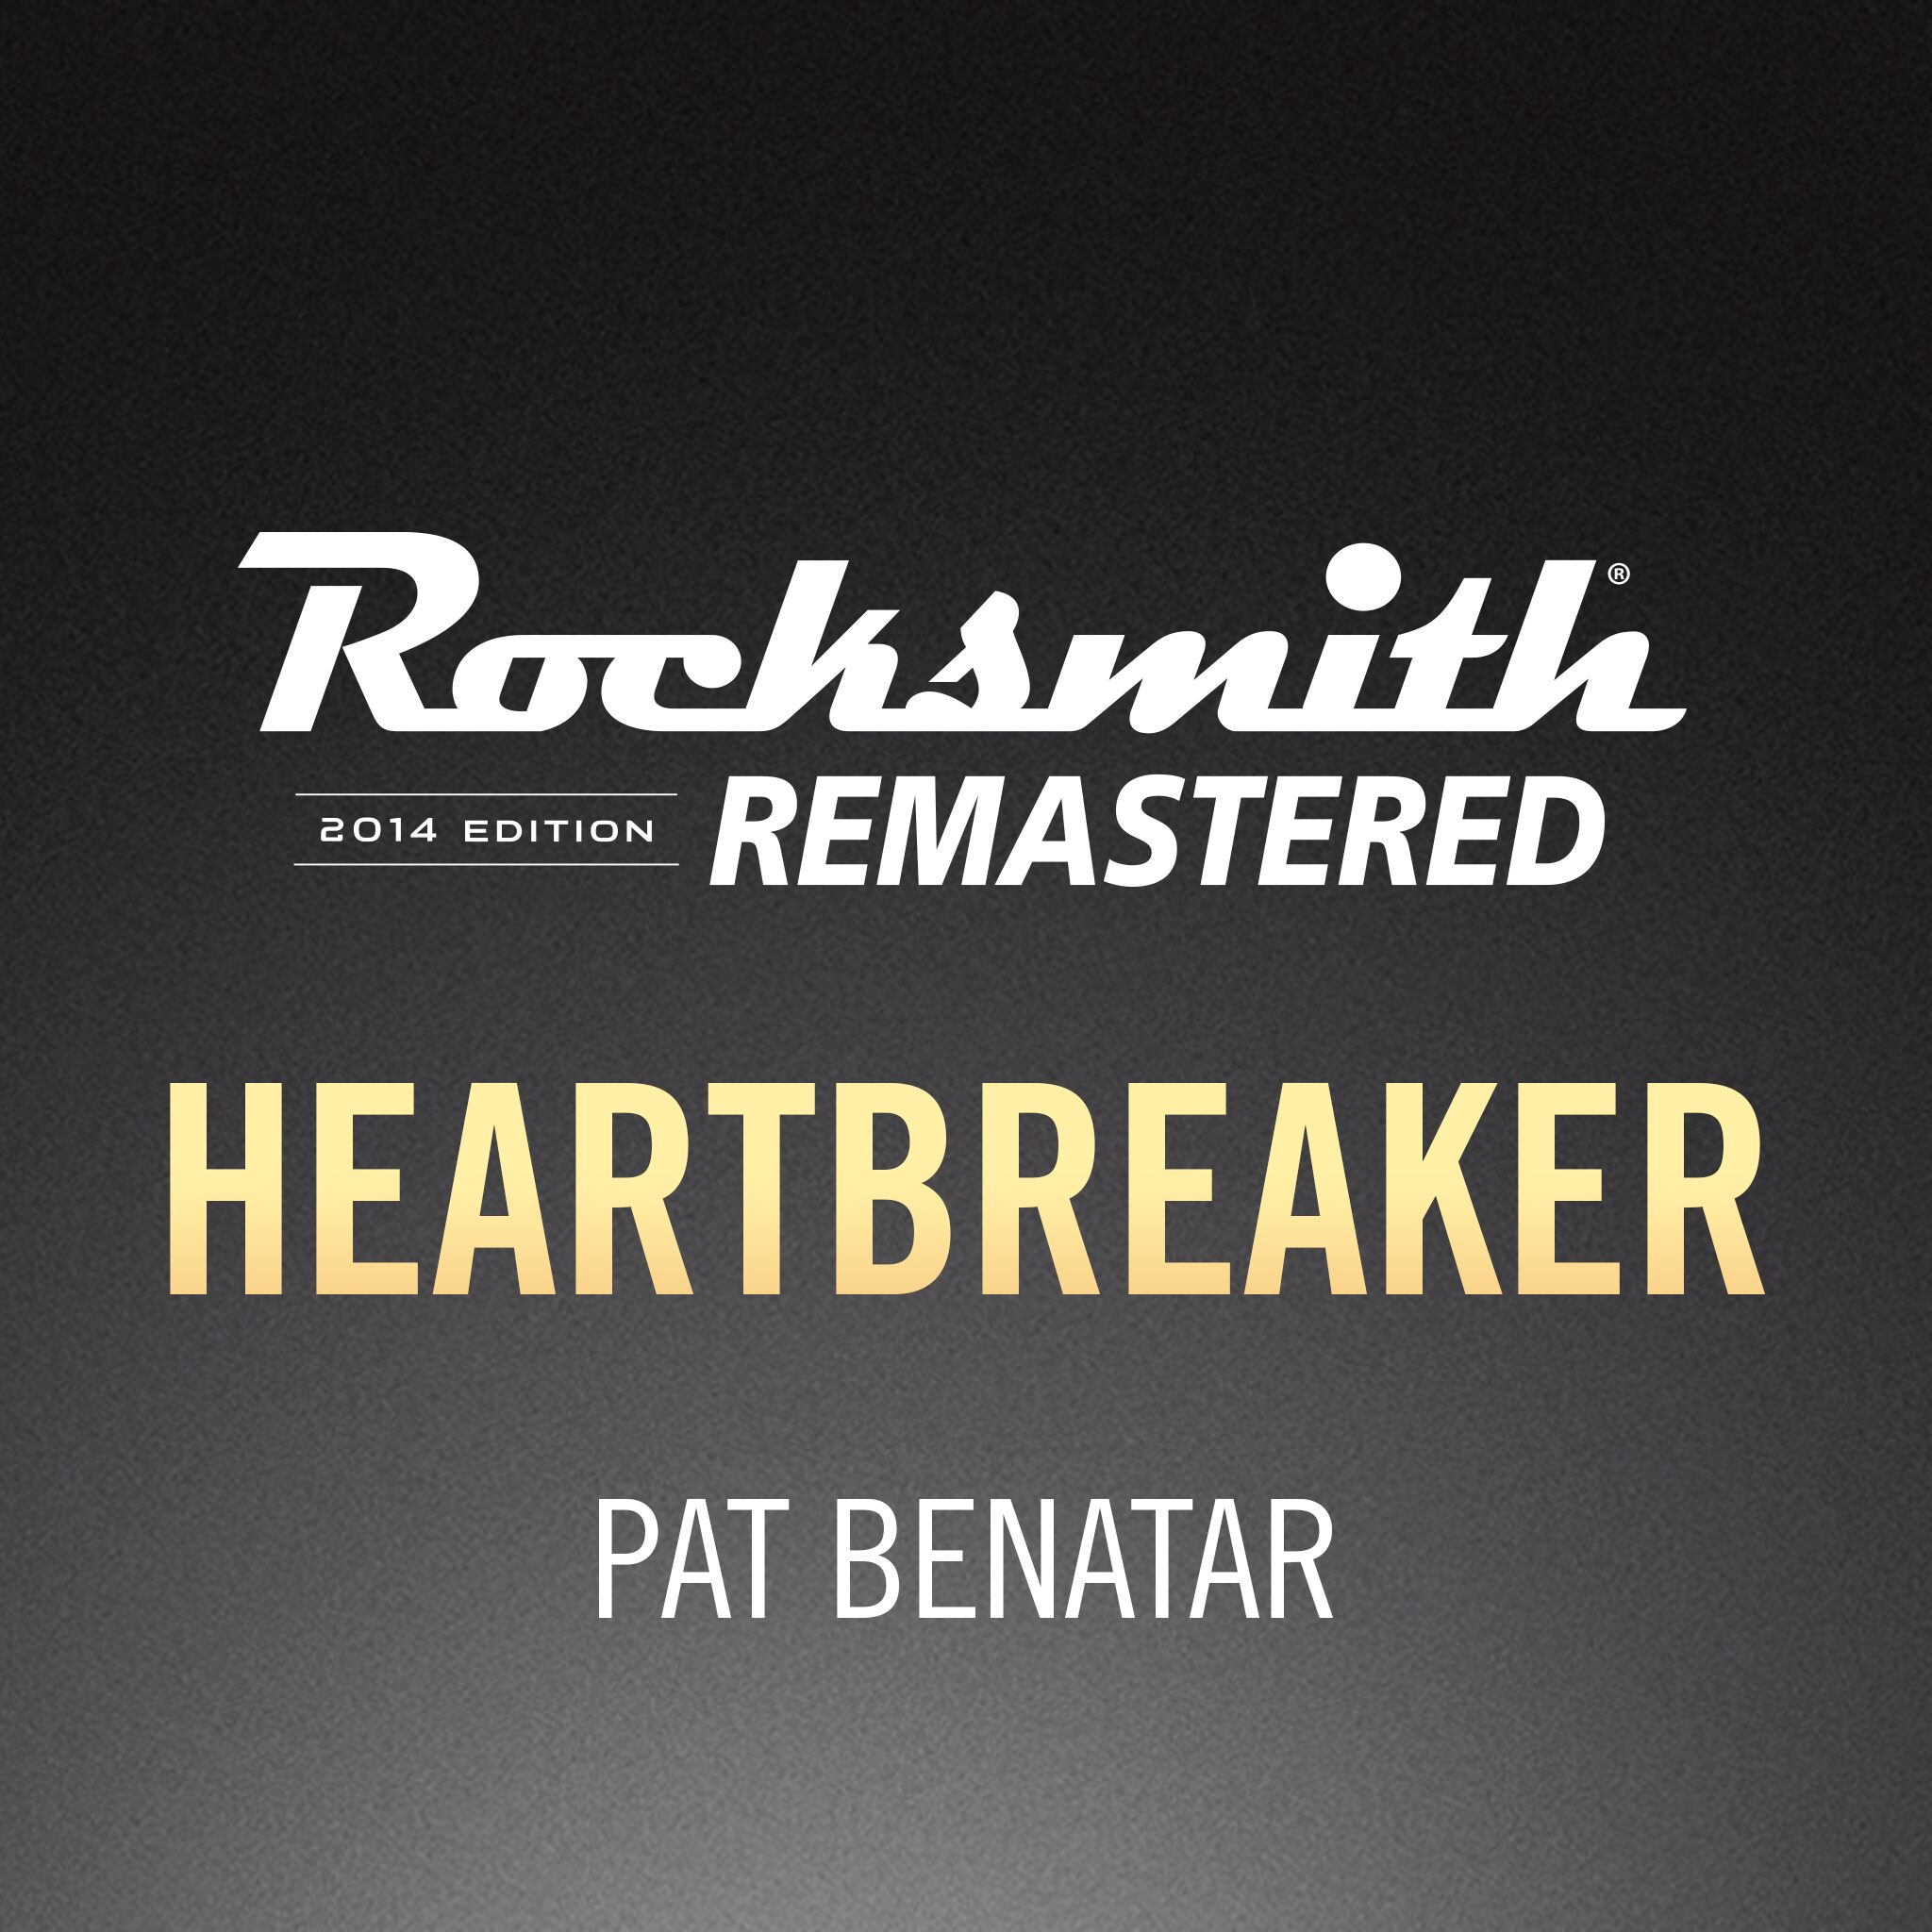 Pat Benatar Heartbreaker. Heartbreaker (Pat Benatar Song). Pat heartbreaker